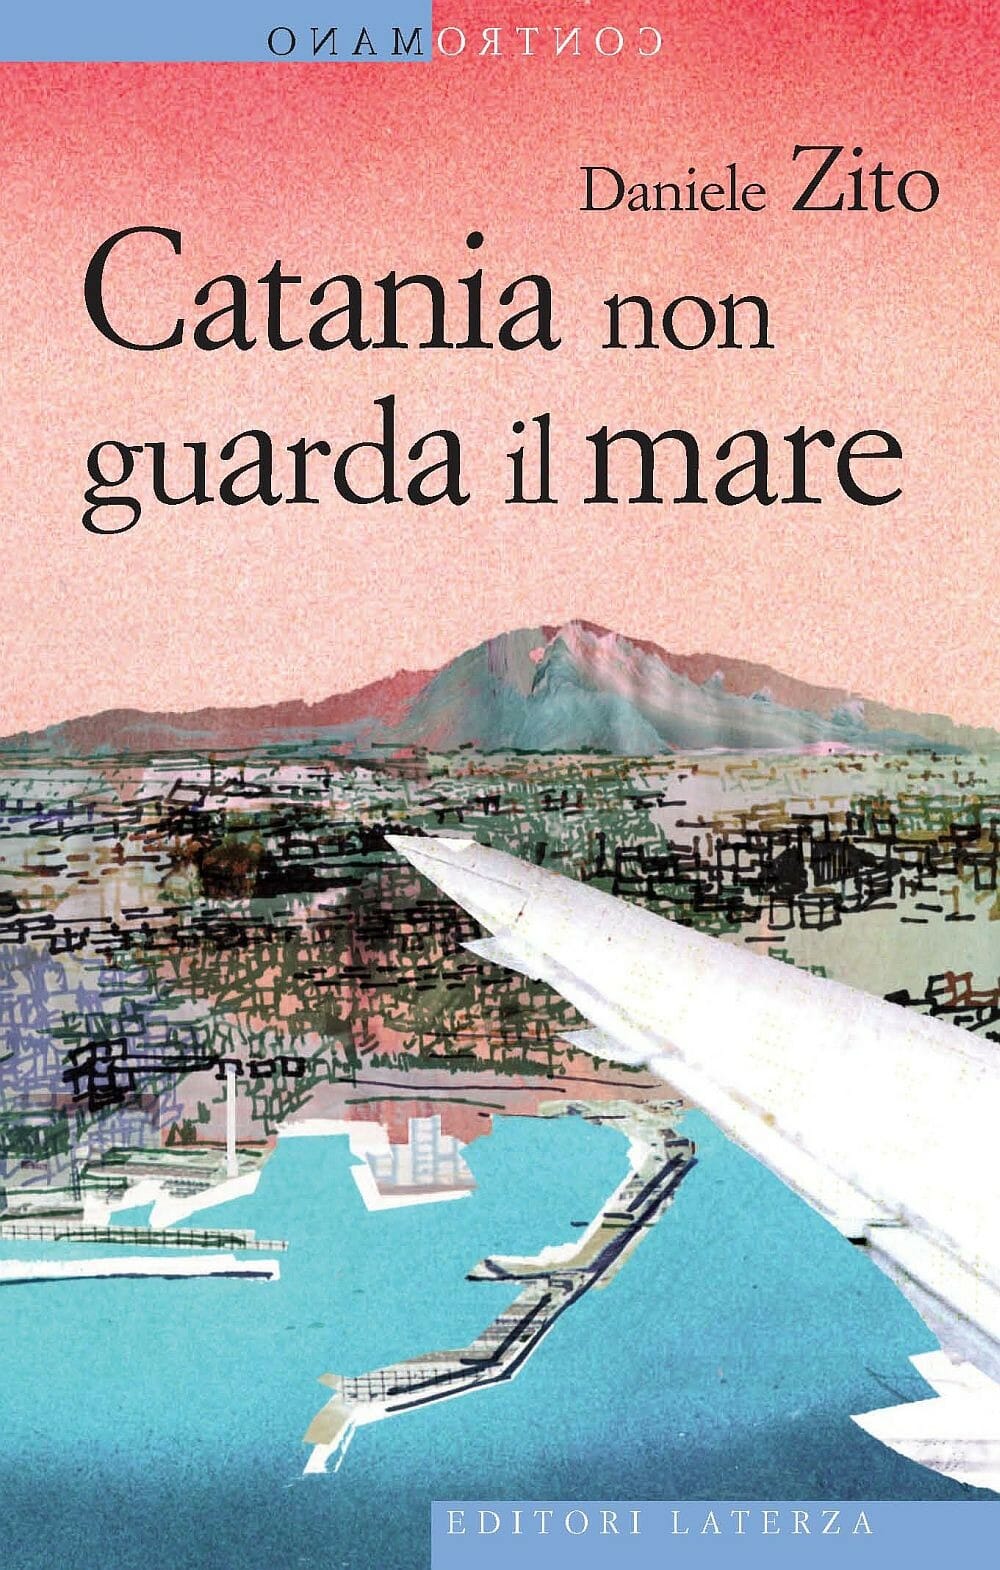 Daniele Zito Catania non guarda il mare